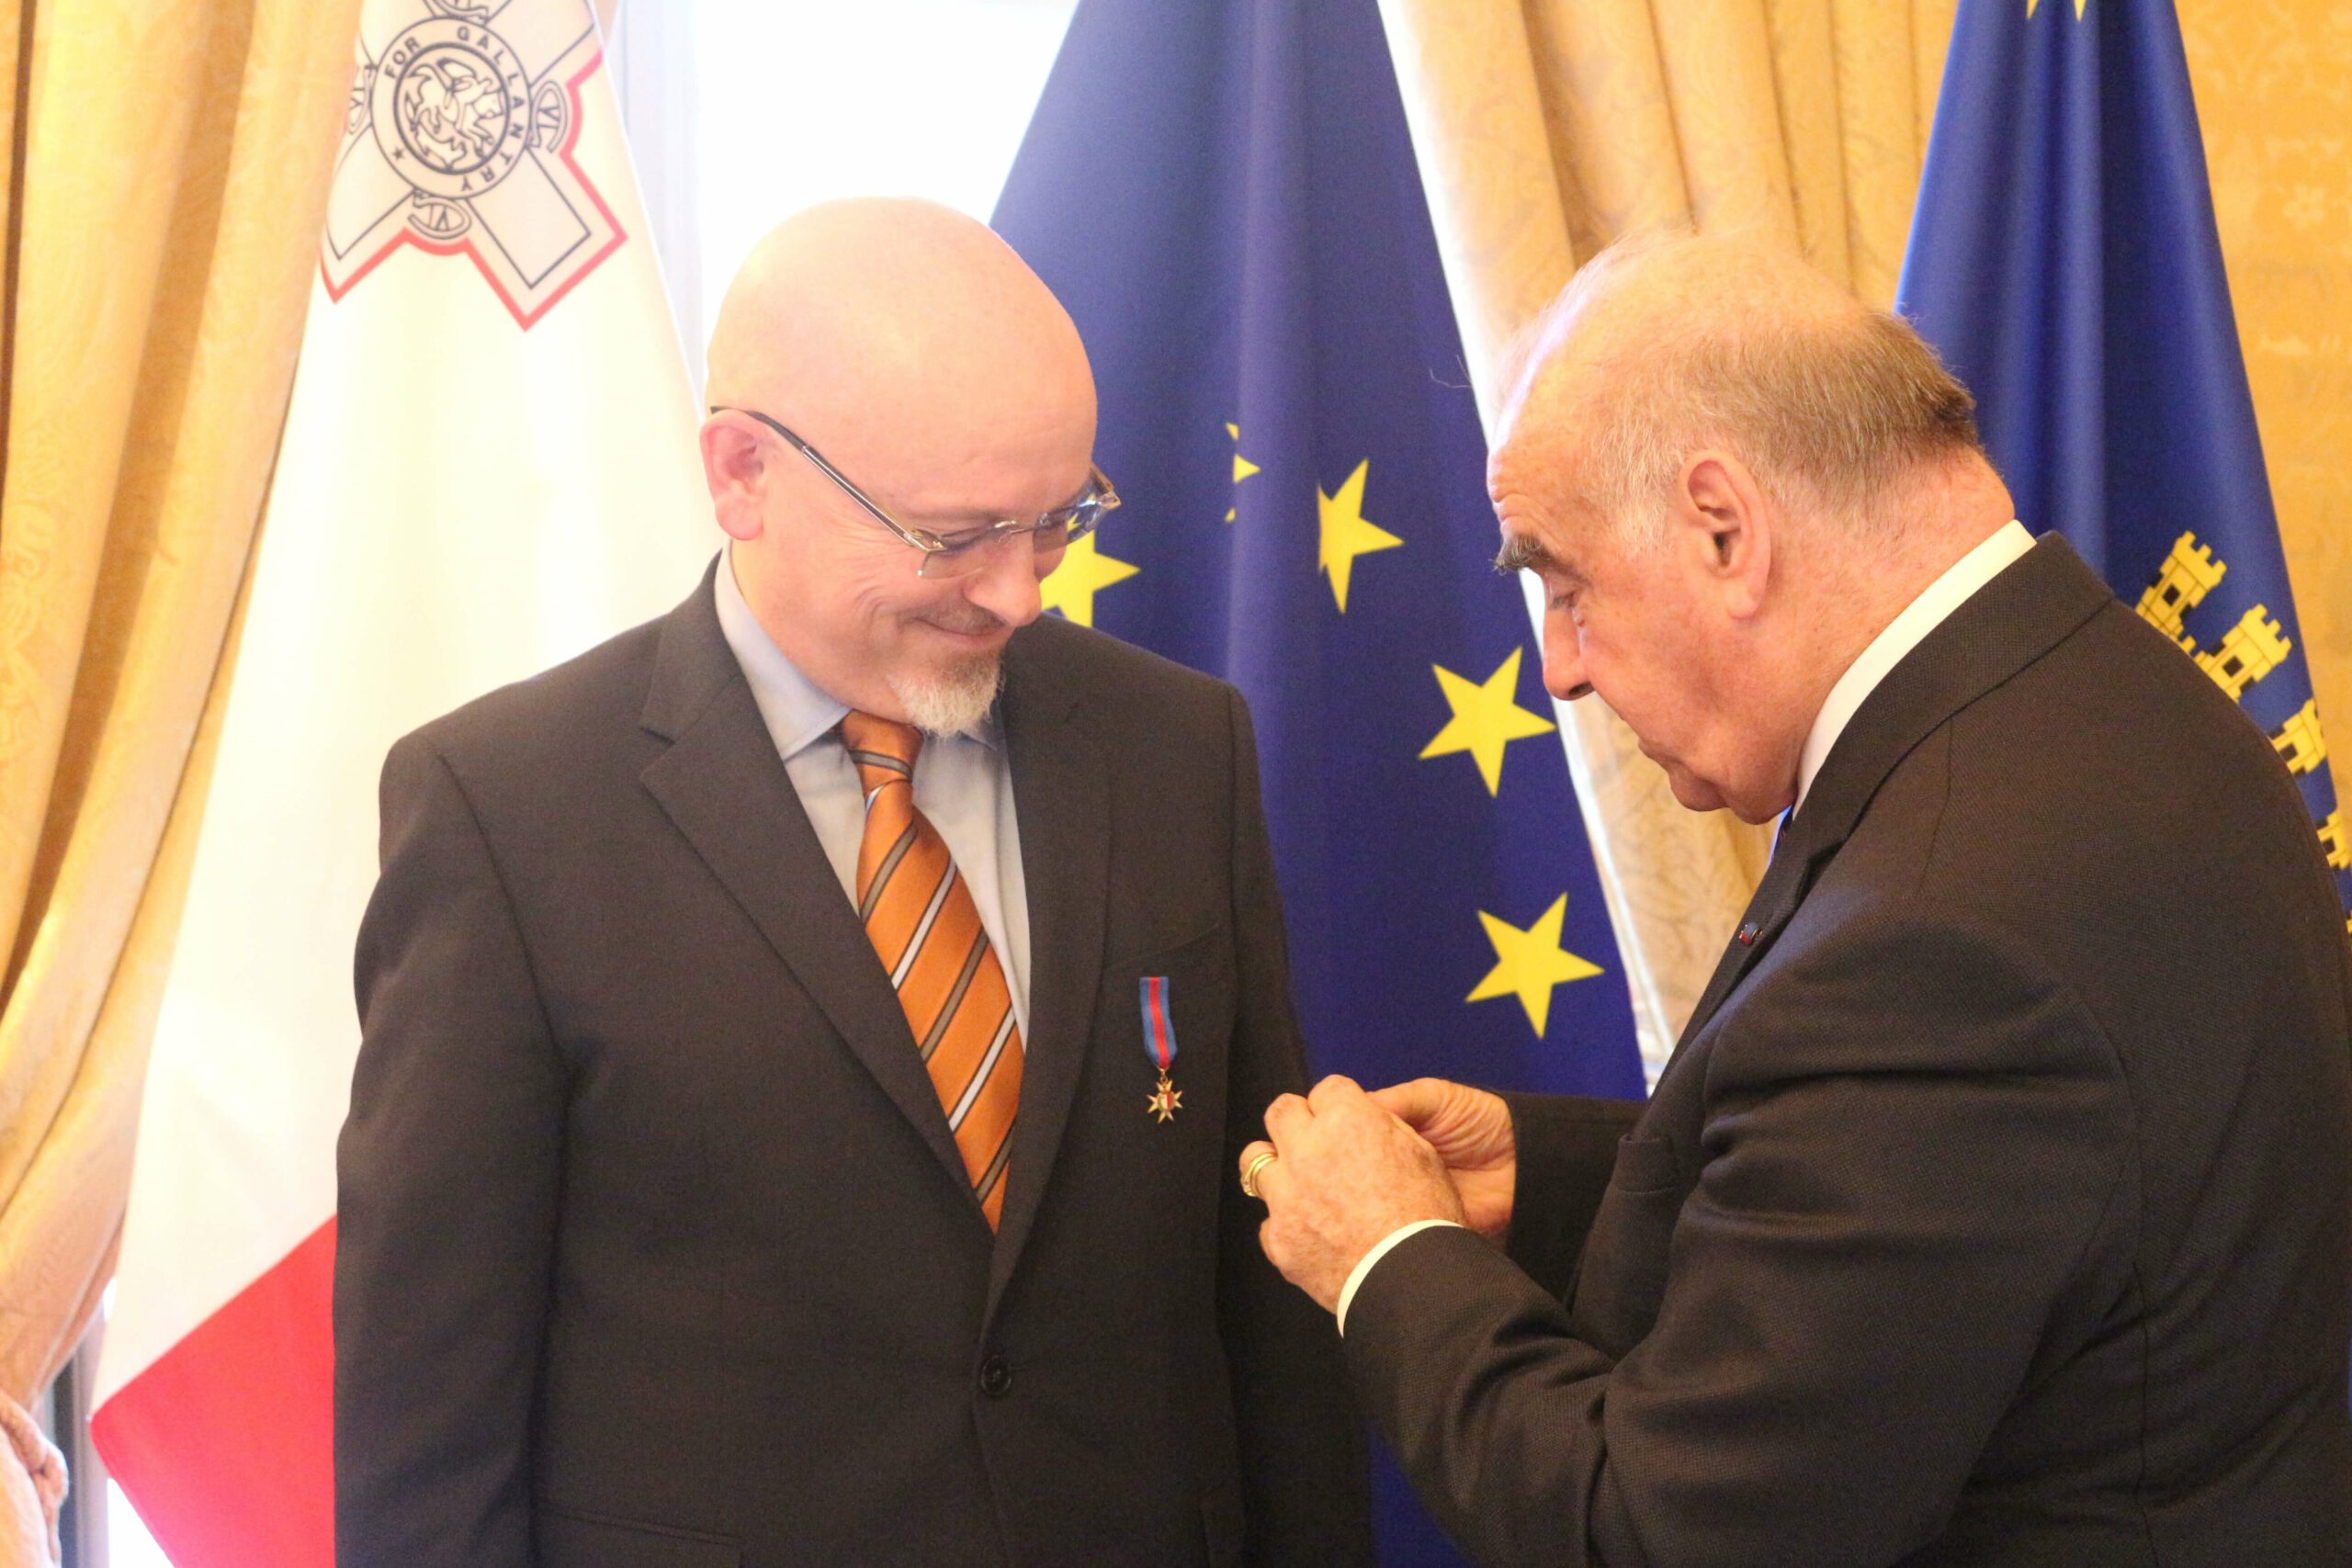 Prof Jovan Kurbalija meets President of Malta George Vella